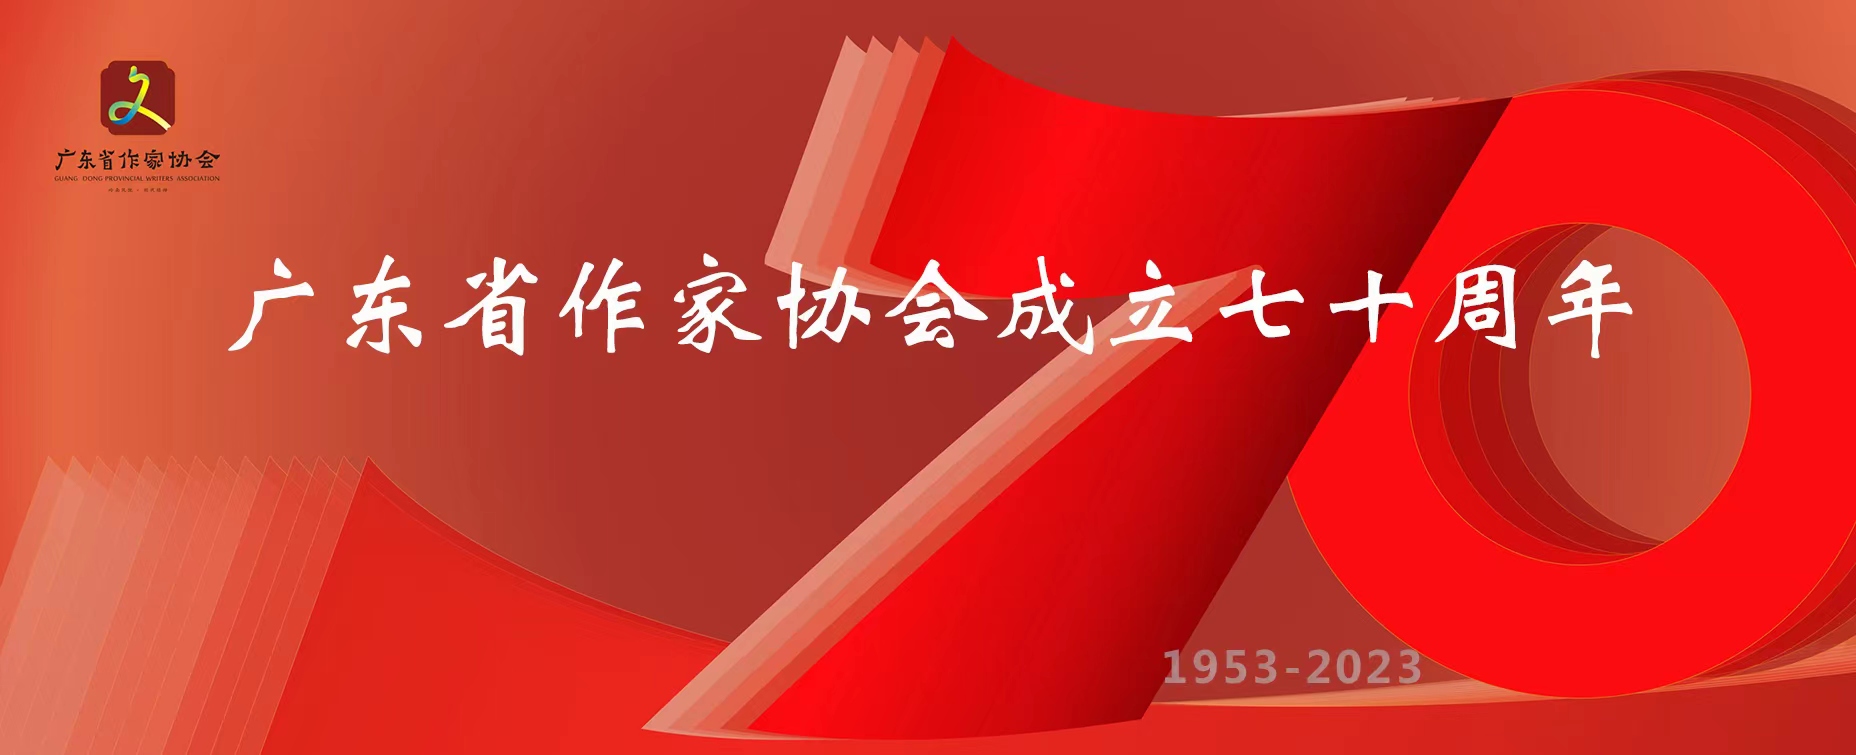 致广东省作家协会成立70周年的贺信